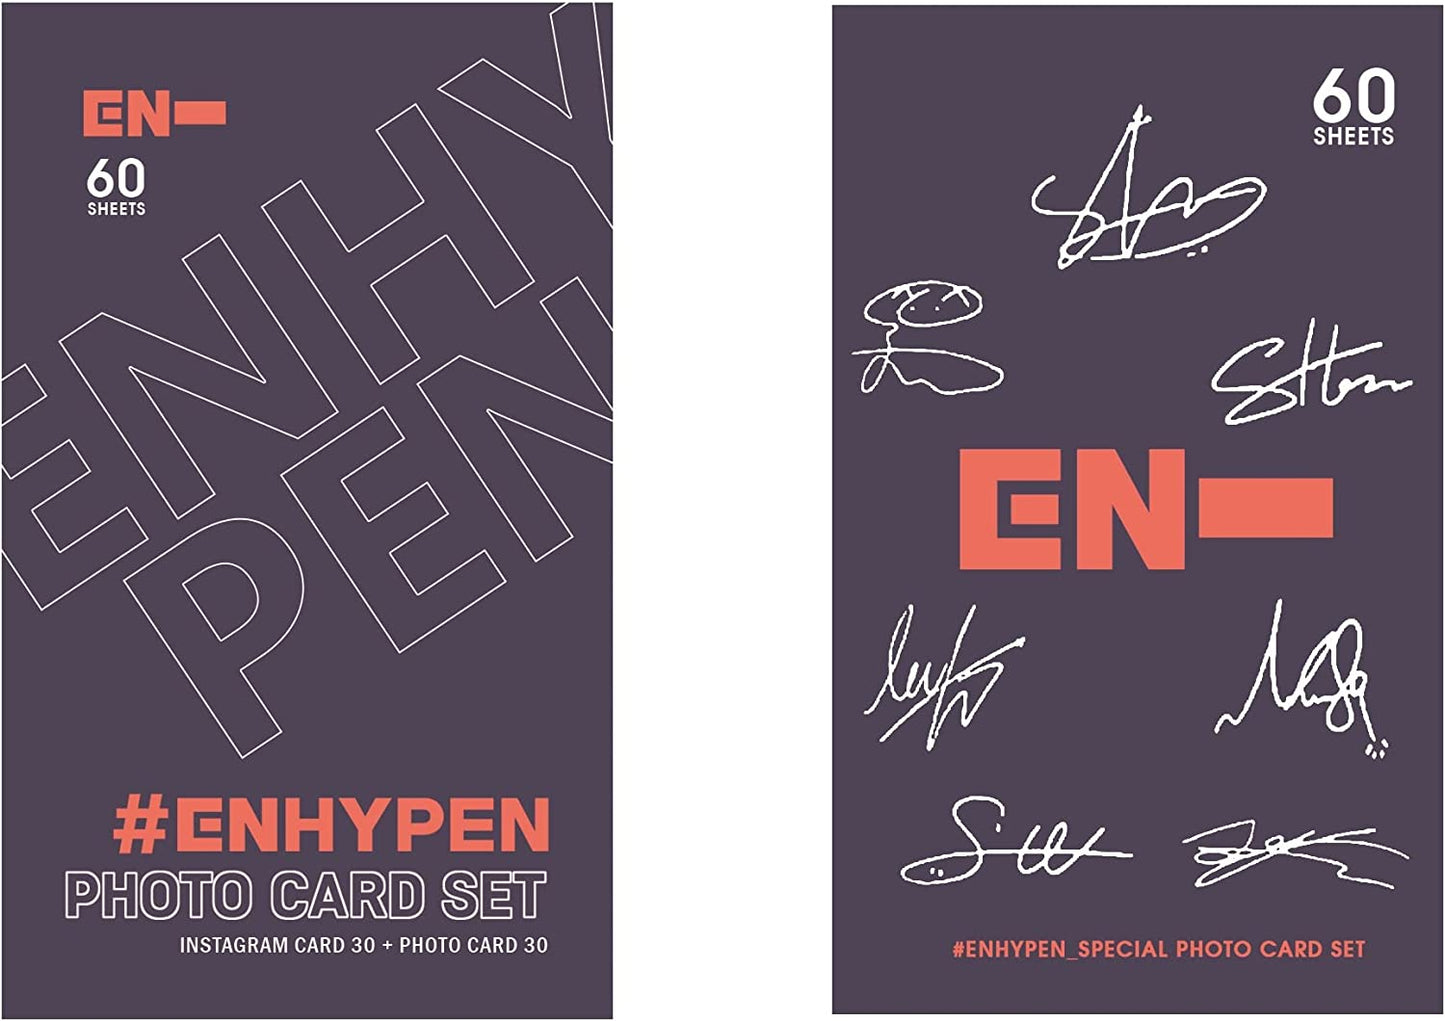 ENHYPEN Special Photo Card SET